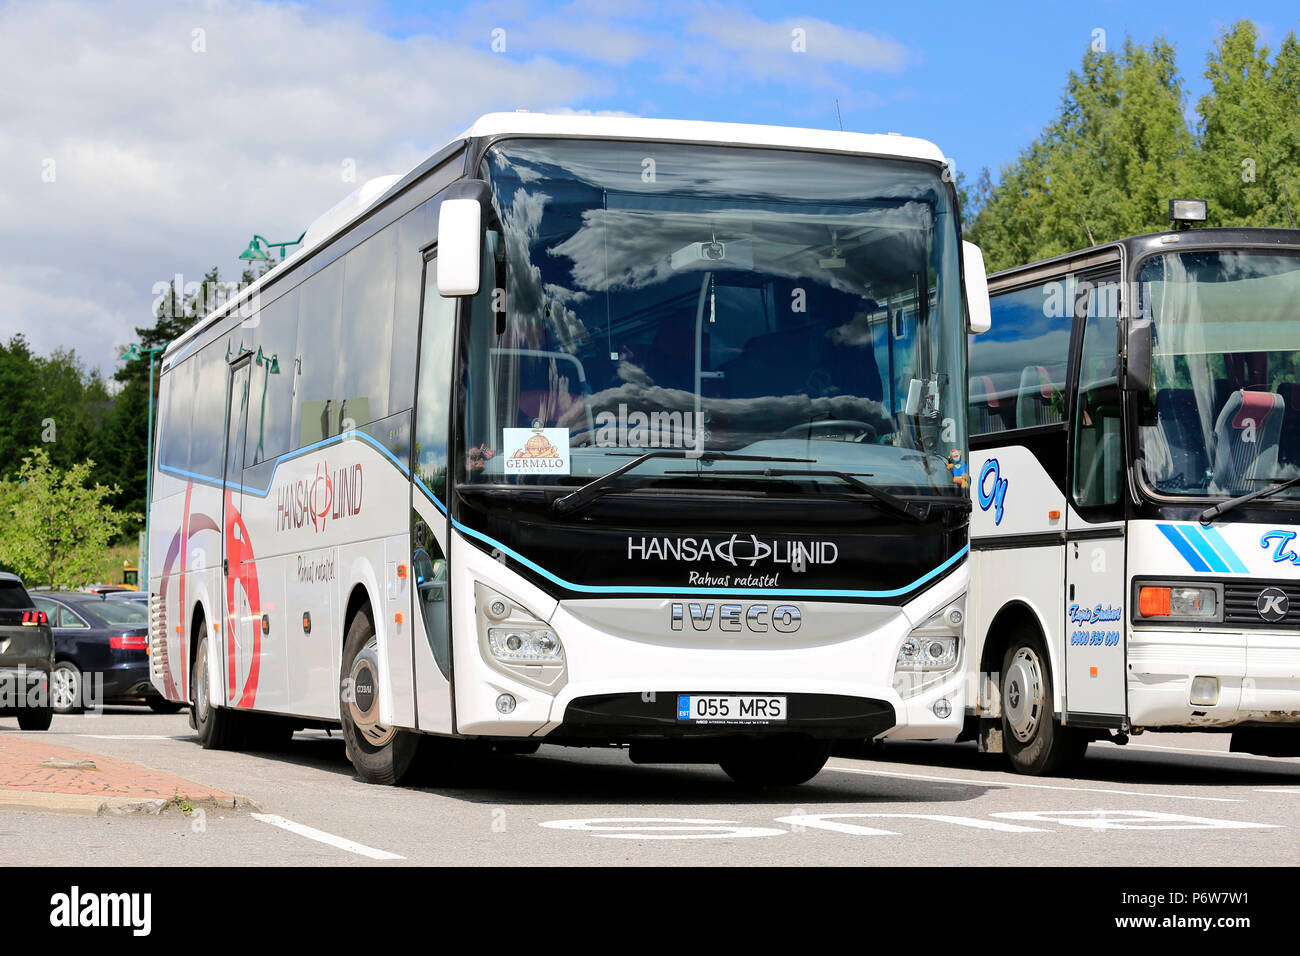 Weißen Iveco Evadys tour bus auf Bus Stop von Ruhe und Service Bereich an einem Tag des Sommers in Salo, Finnland - 30. Juni 2018 abgestellt. Stockfoto